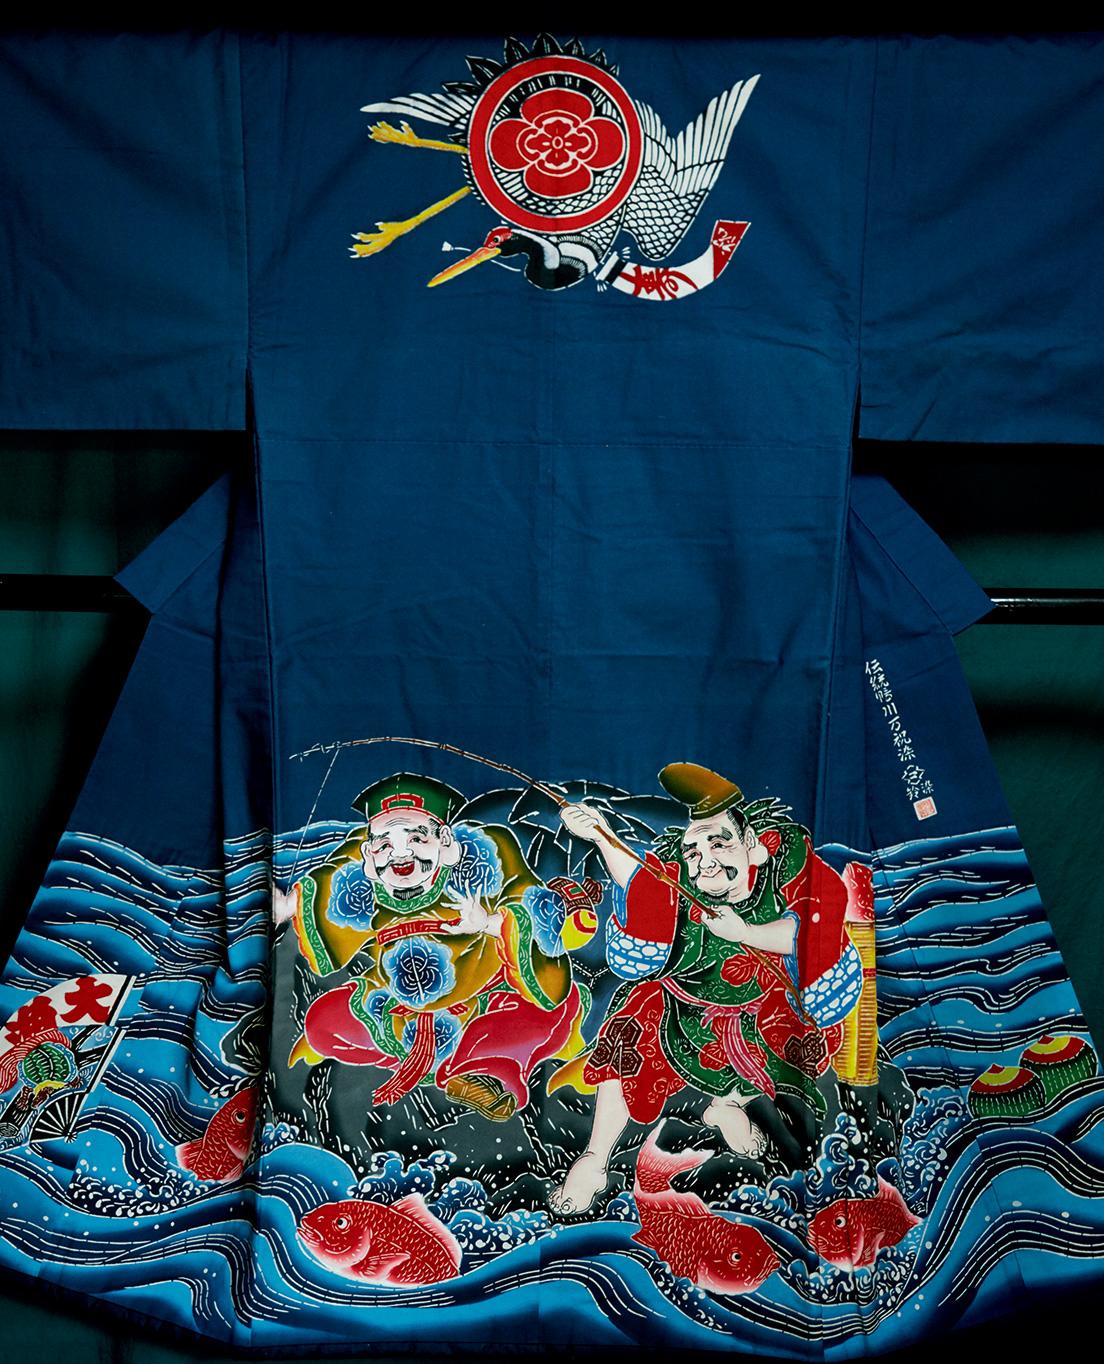 Buying No.30【 萬祝染の長着 】民漁師の町で生まれた縁起のいい“祝い着”。